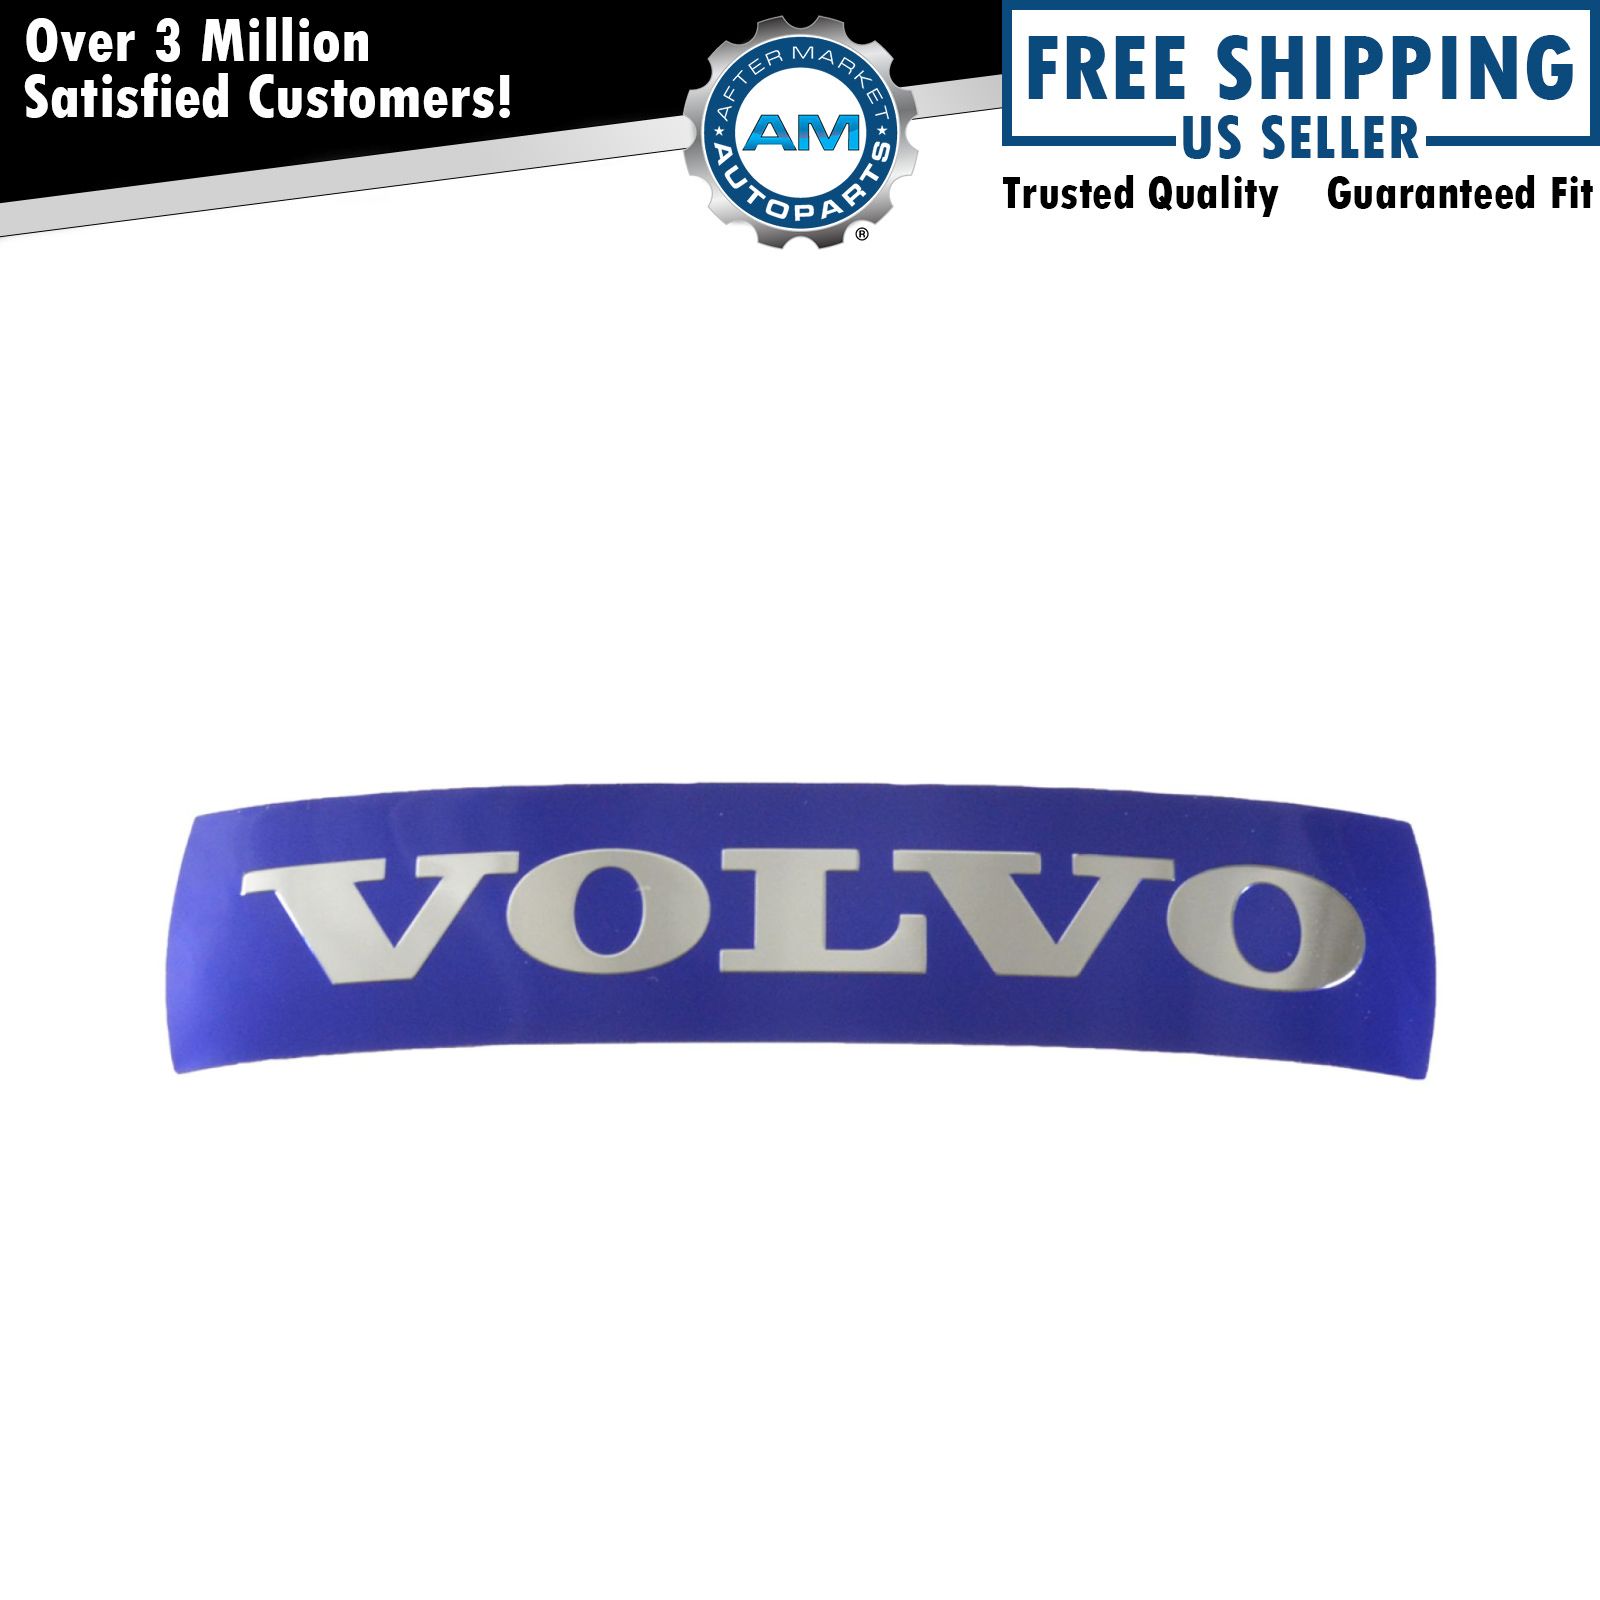 OEM 30796427 Large Grille Badge Emblem Nameplate Blue 133mm x 32mm for Volvo New